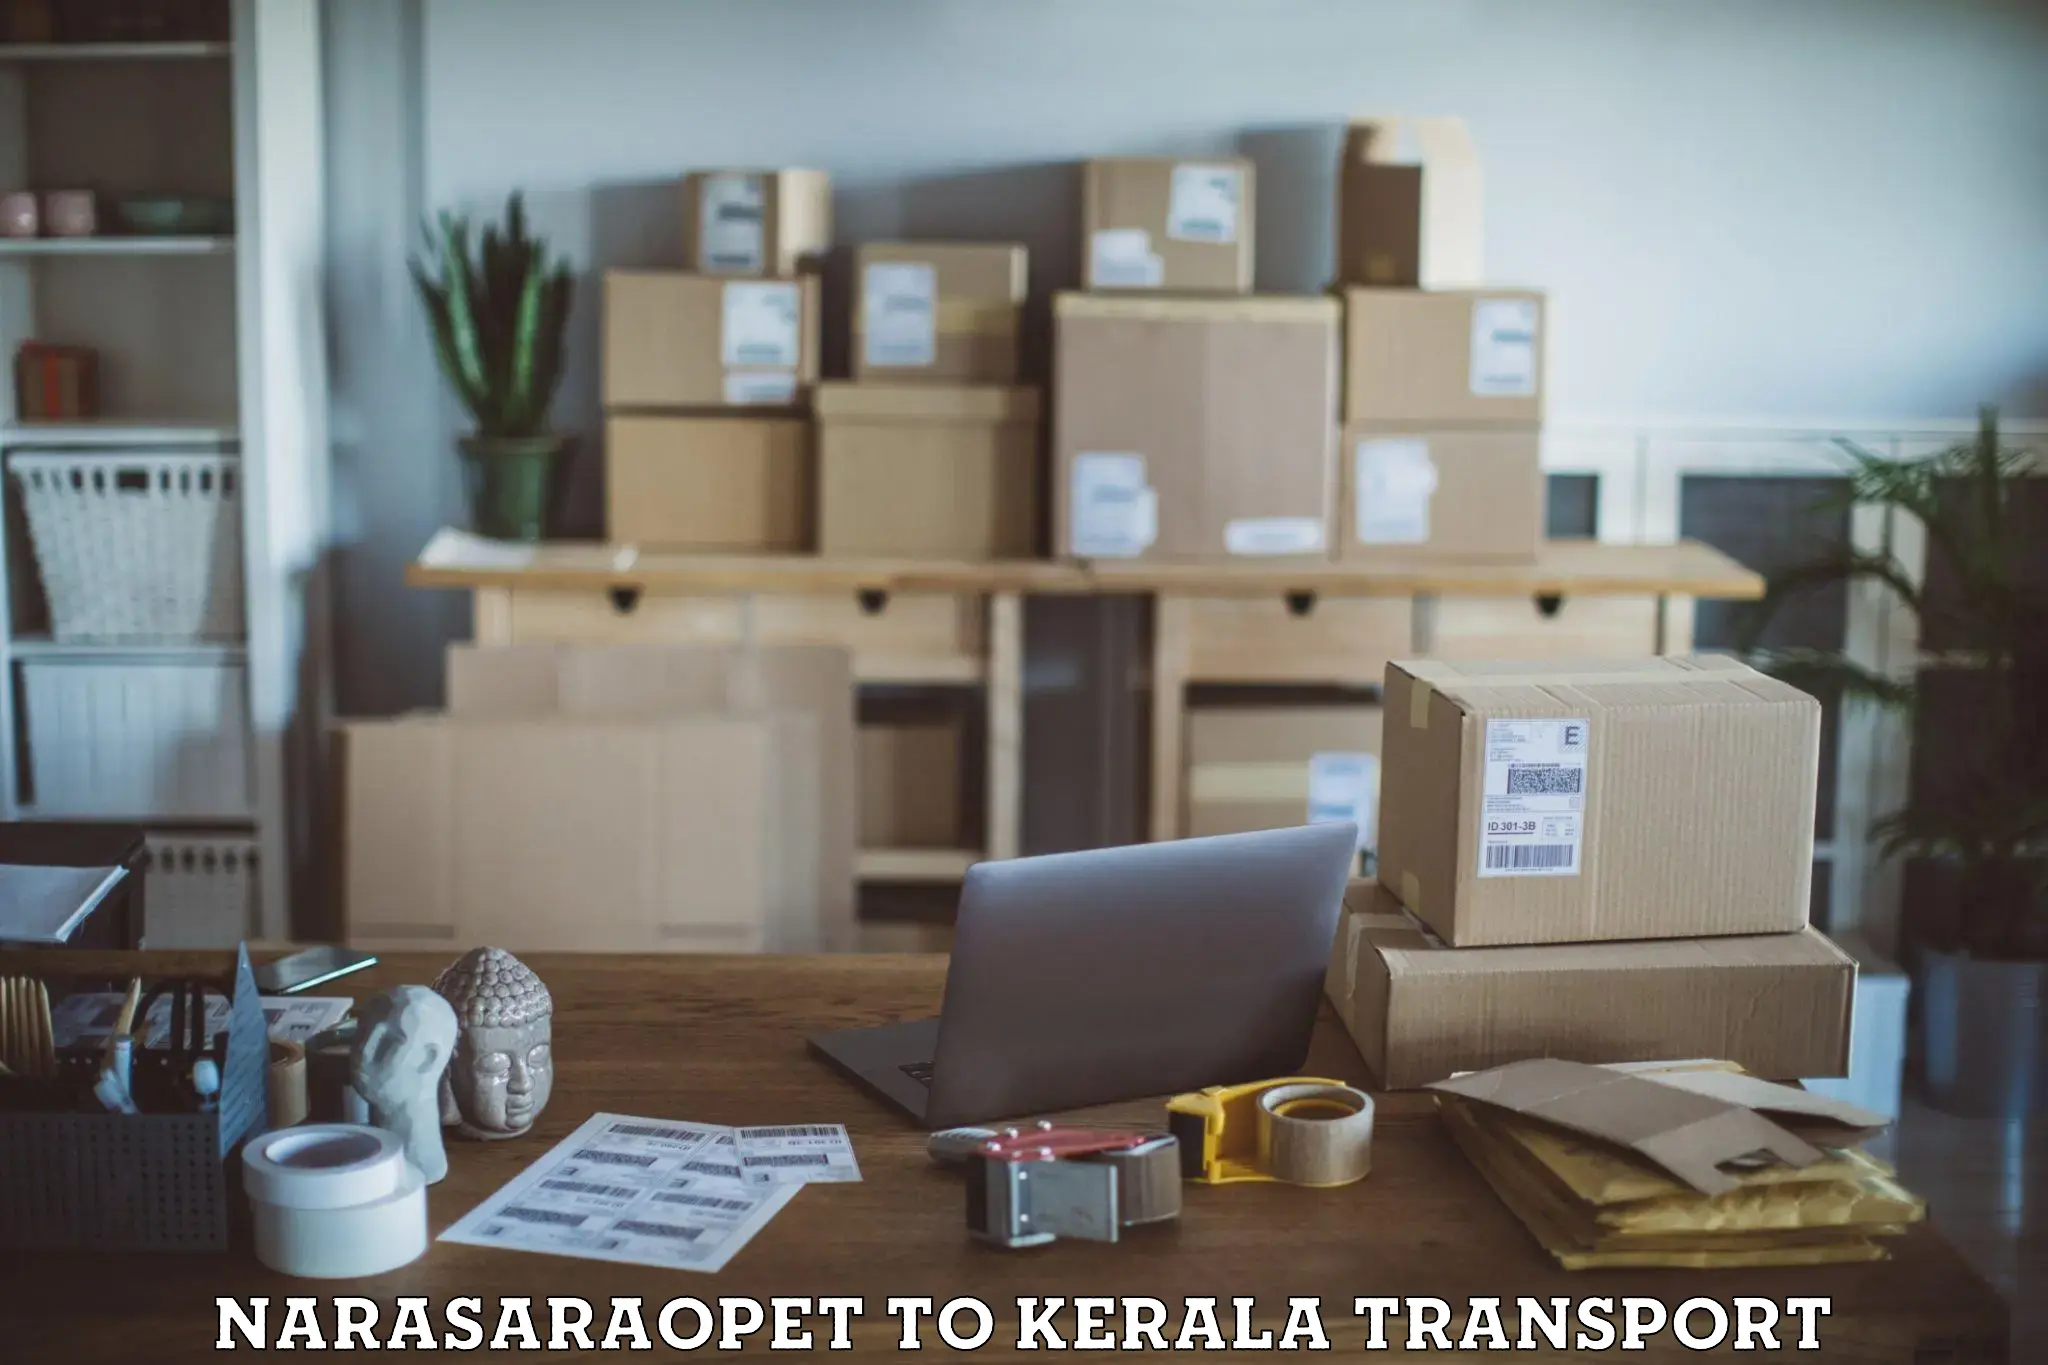 Delivery service Narasaraopet to Neyyattinkara